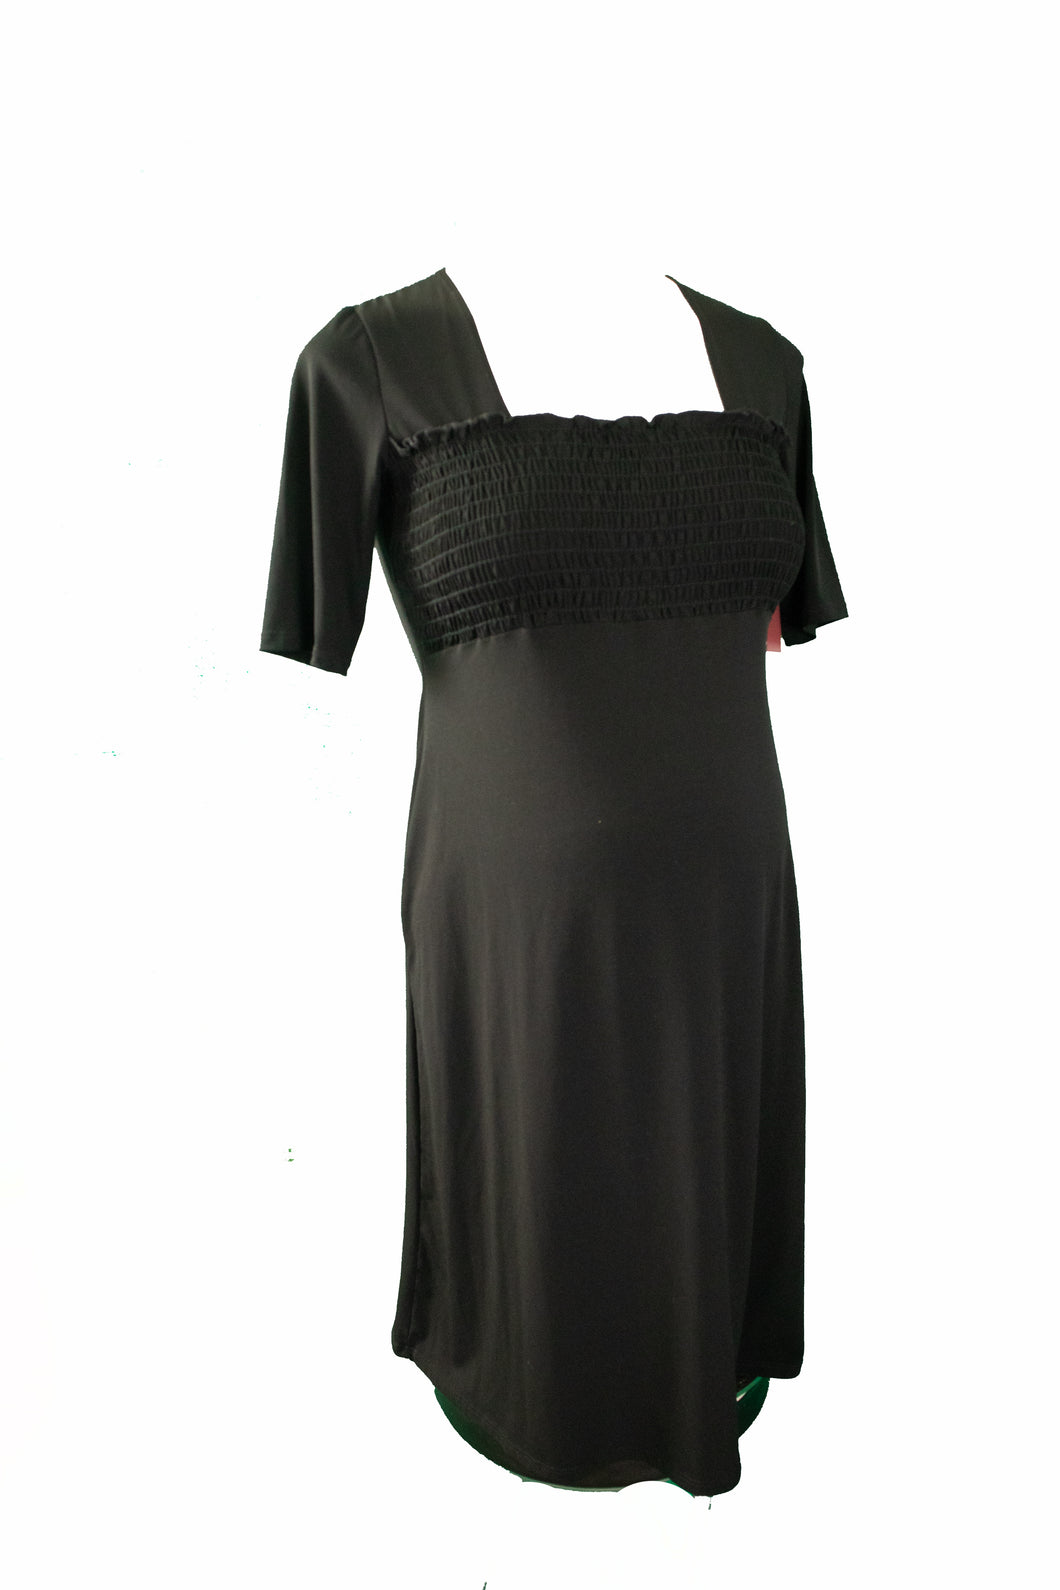 Petite robe noire de maternité Thyme M